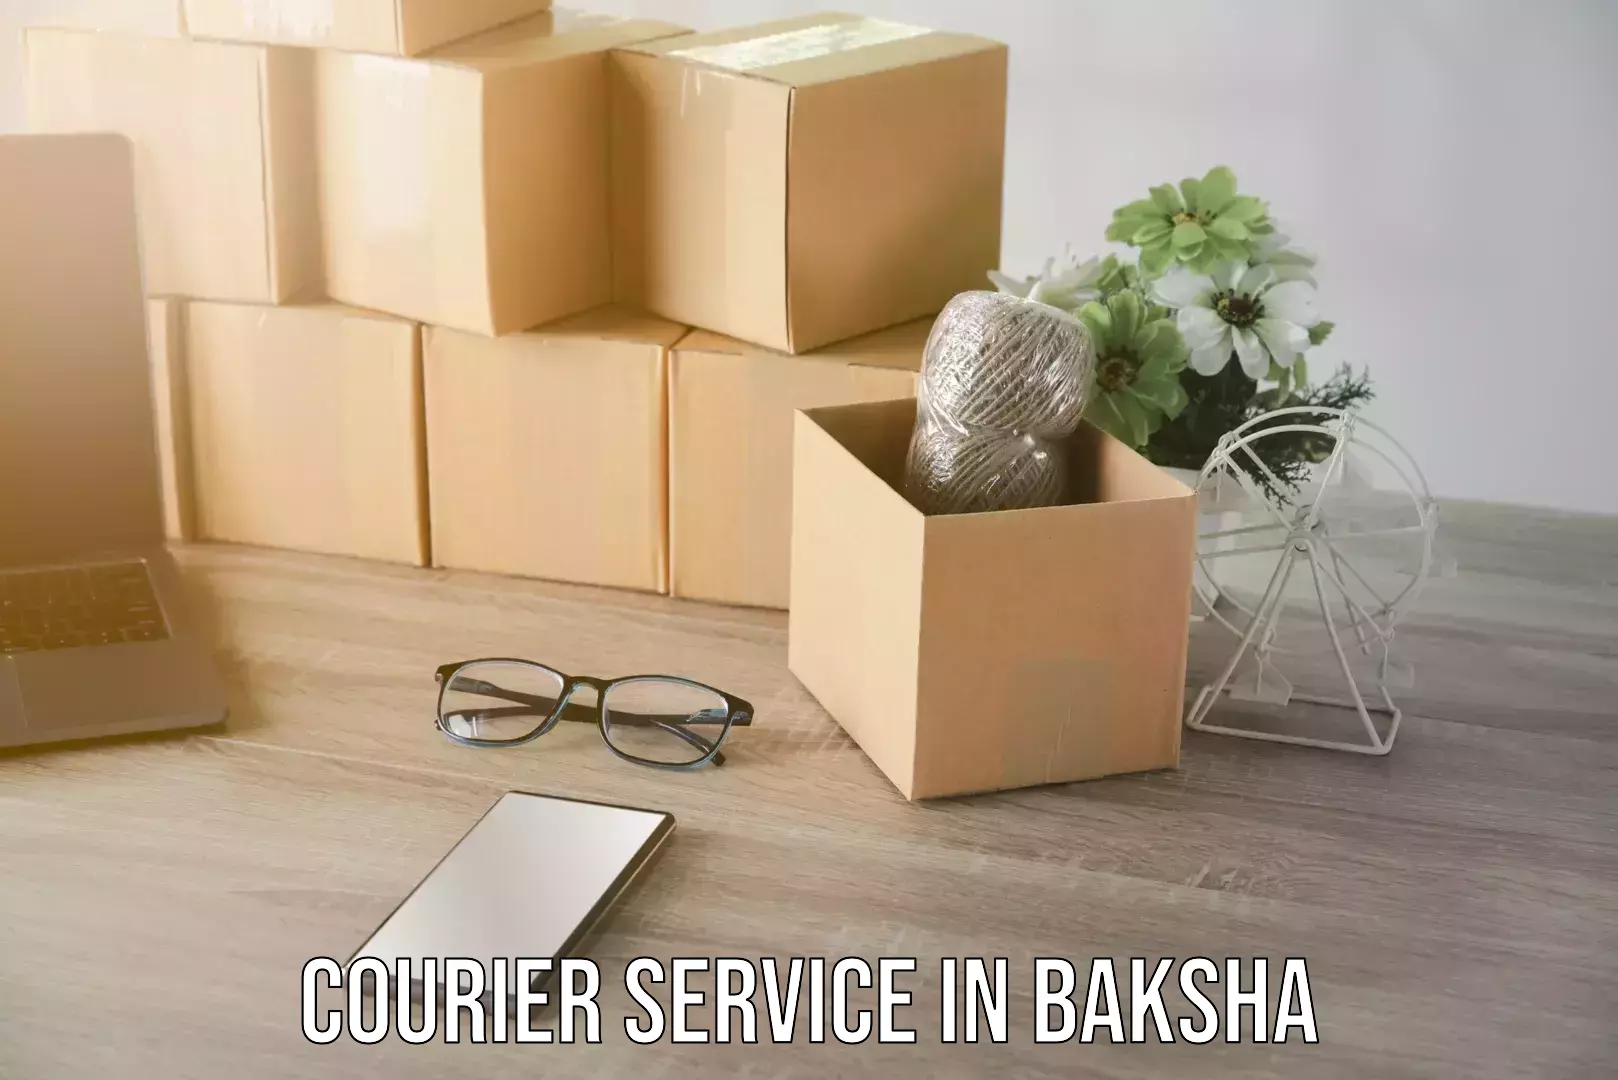 Express delivery network in Baksha